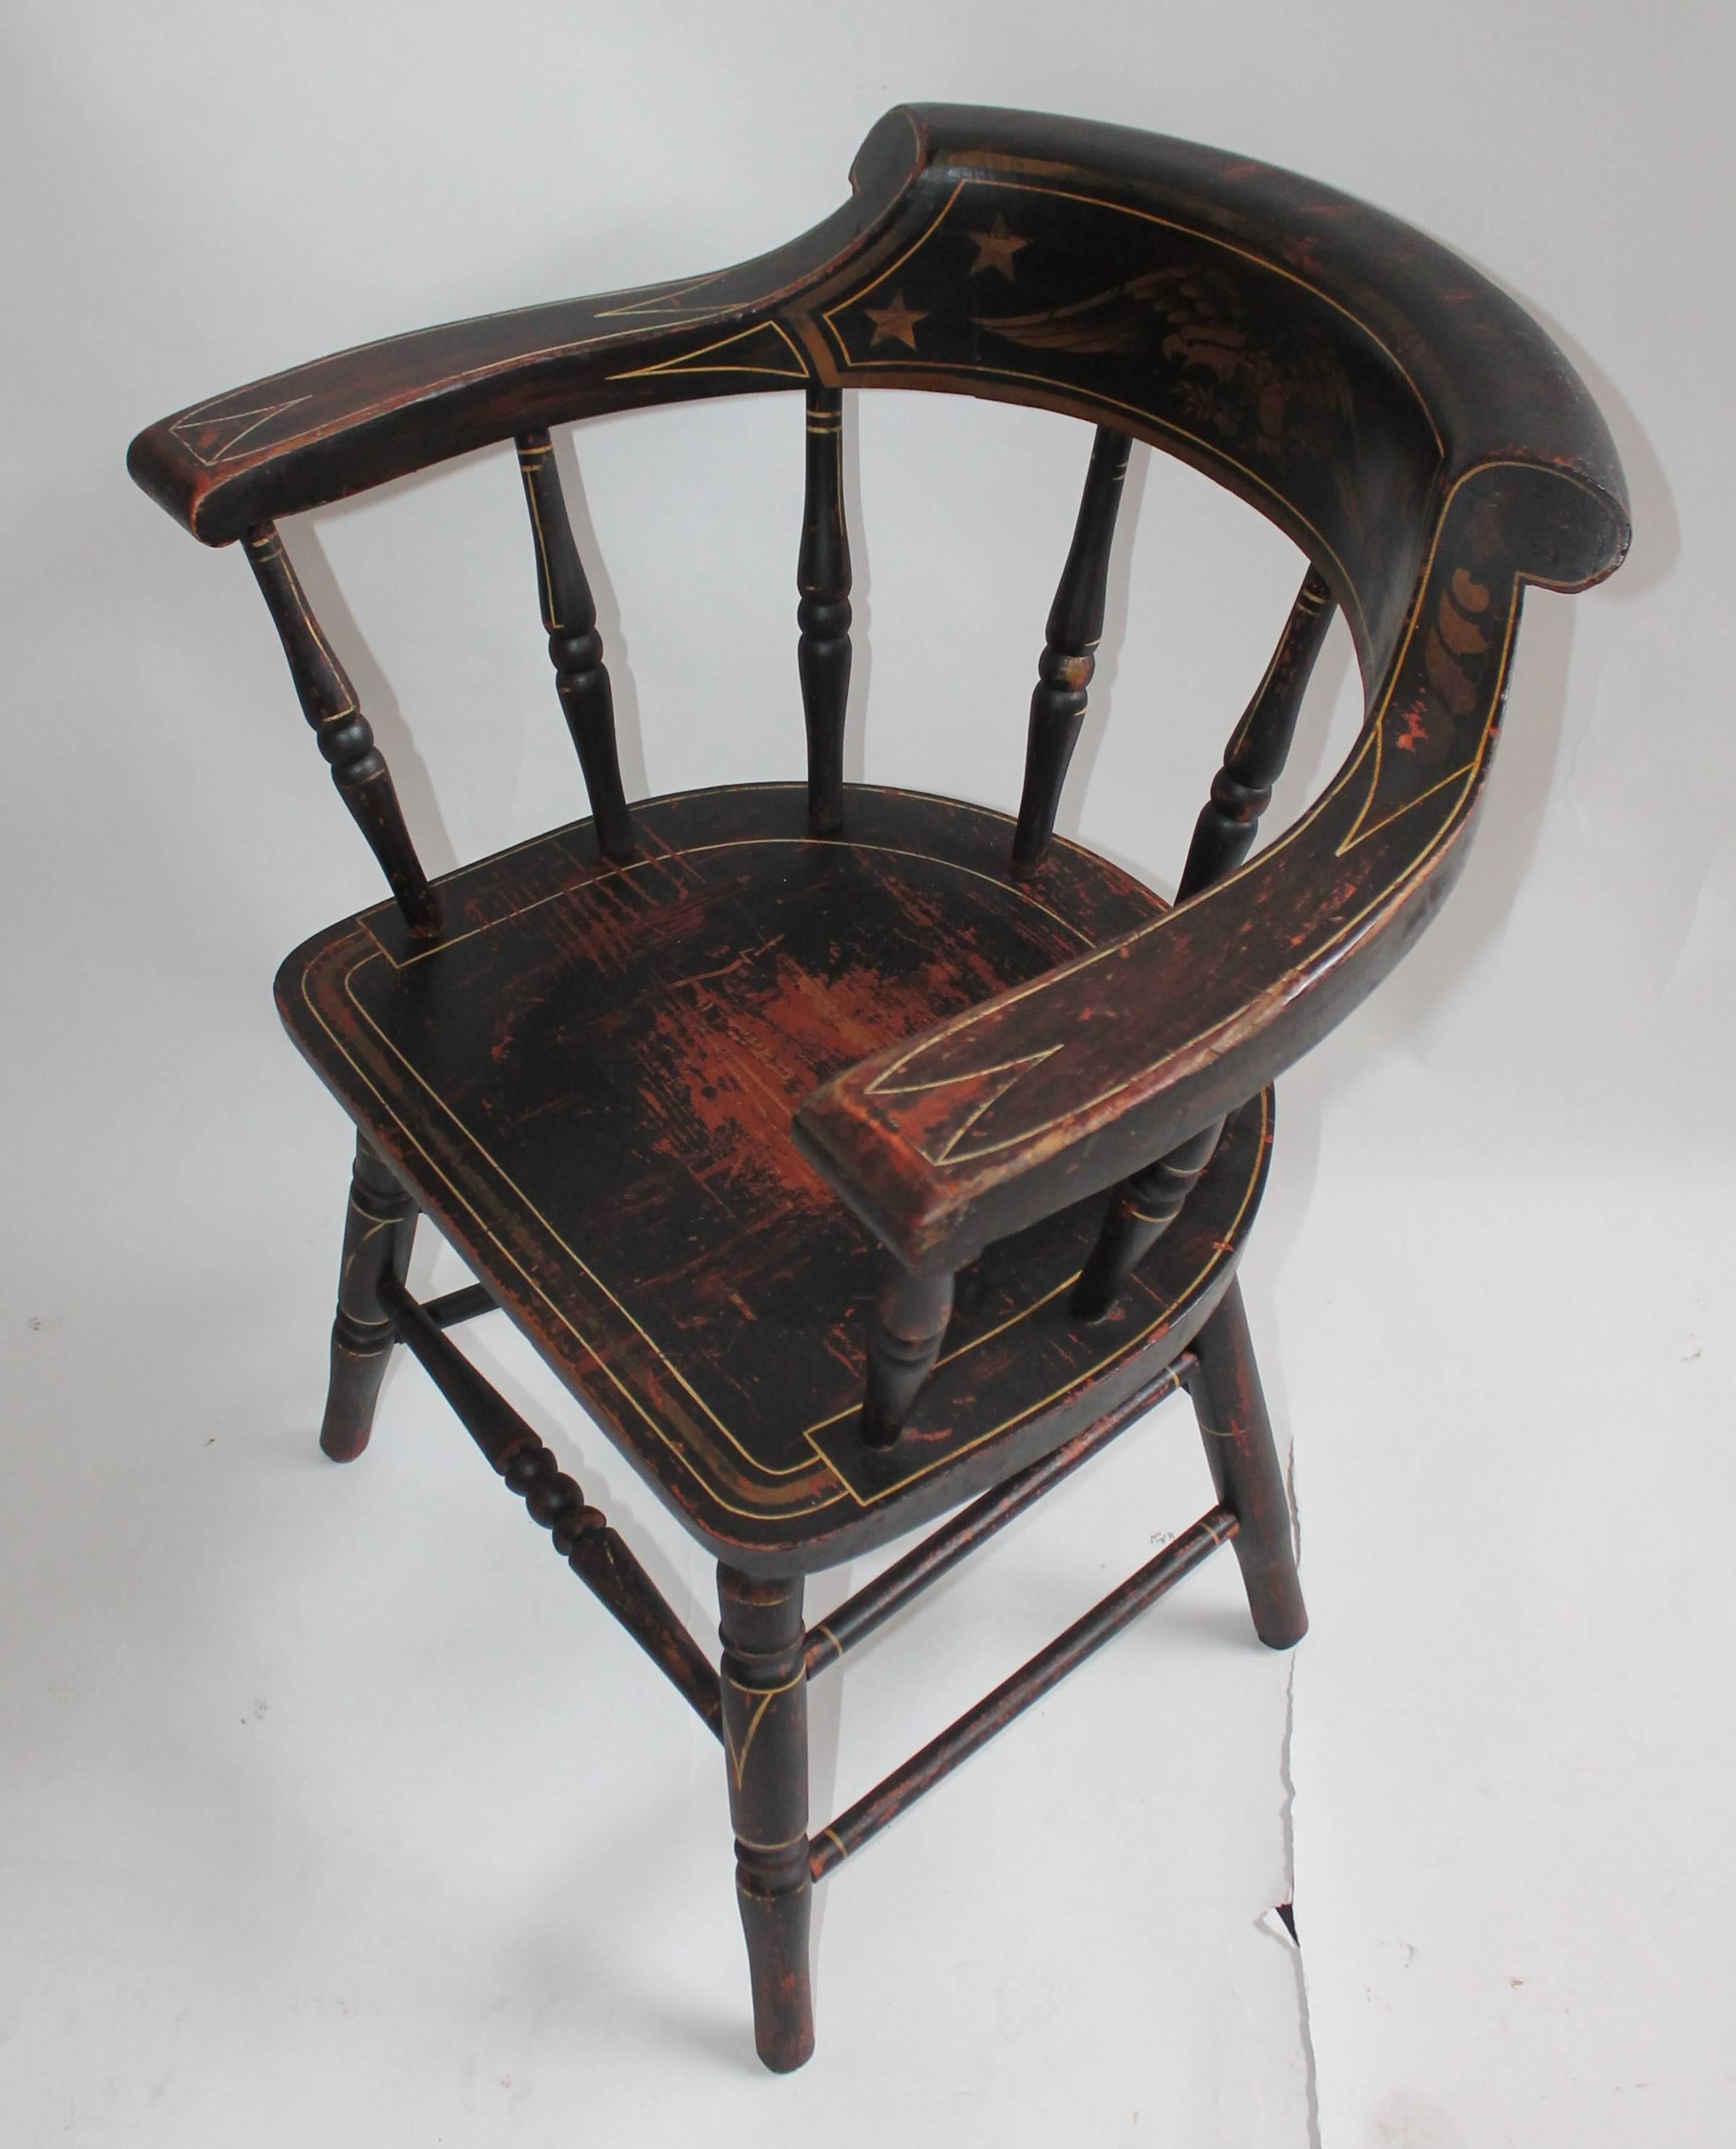 Cette étonnante chaise de capitaine de la Nouvelle Angleterre, peinte et décorée, est entièrement originale. Cette chaise a la surface dorée d'origine et une base peinte en rouge. Cette chaise à assise en planches est en excellent état de